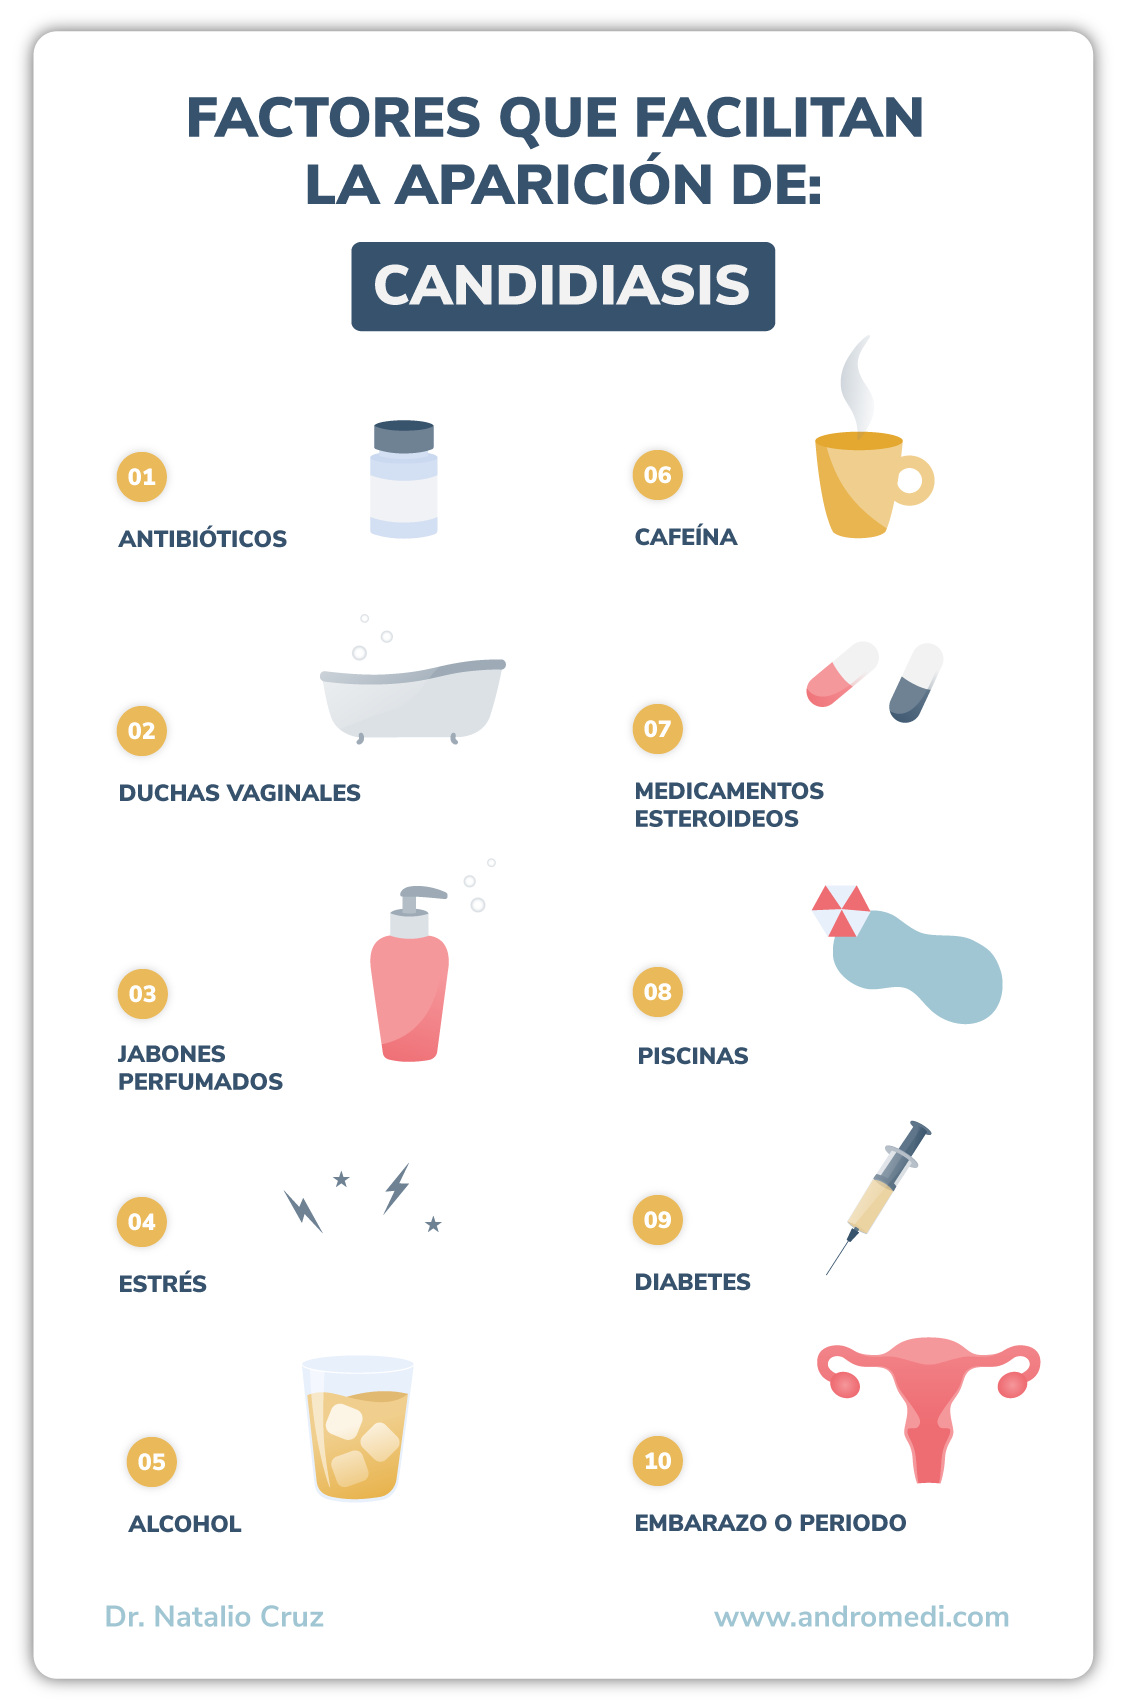 Infografia sobre los factores que facilitan la aparición de candidiasis